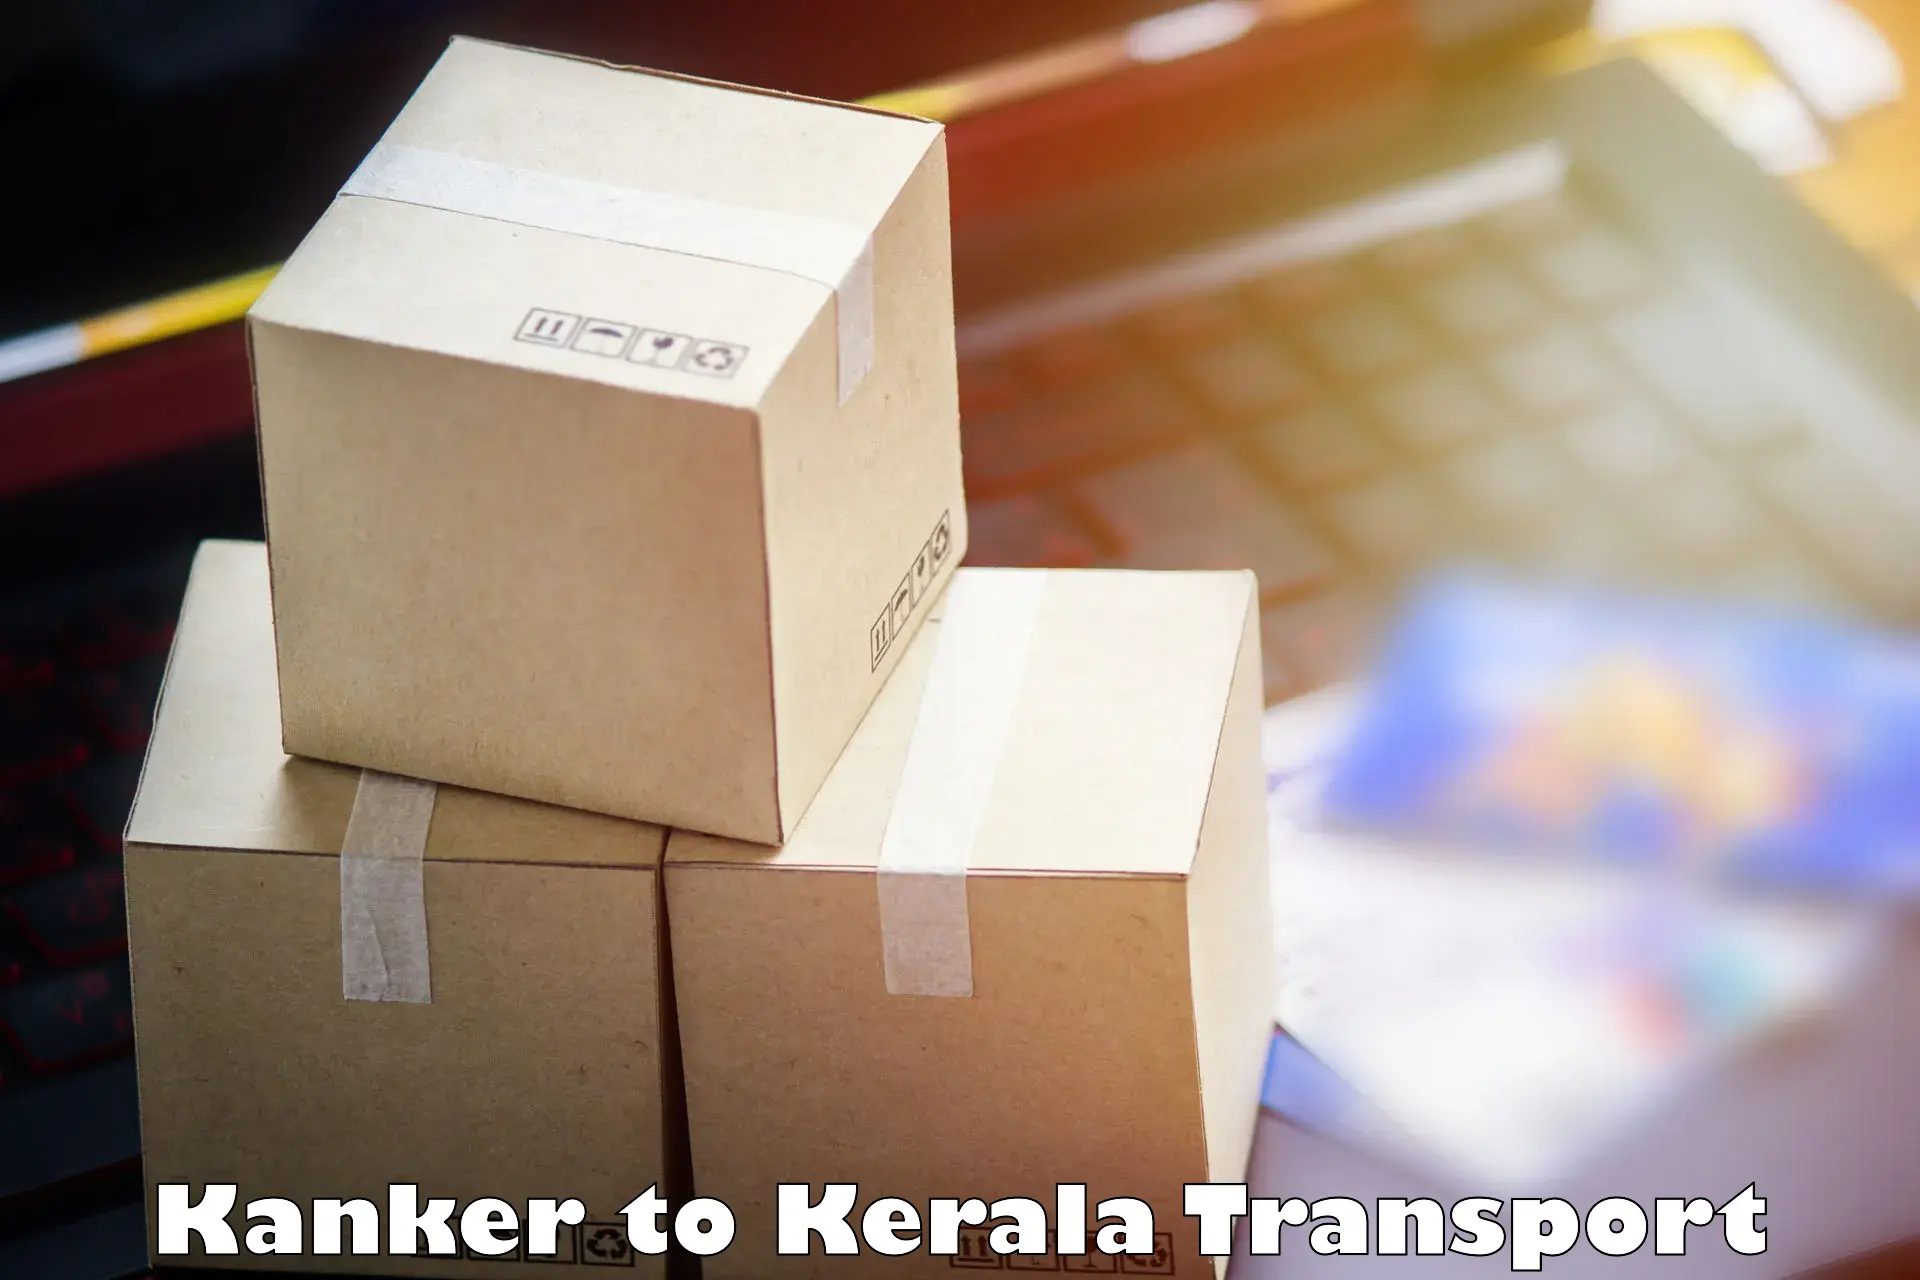 Furniture transport service Kanker to Tirurangadi